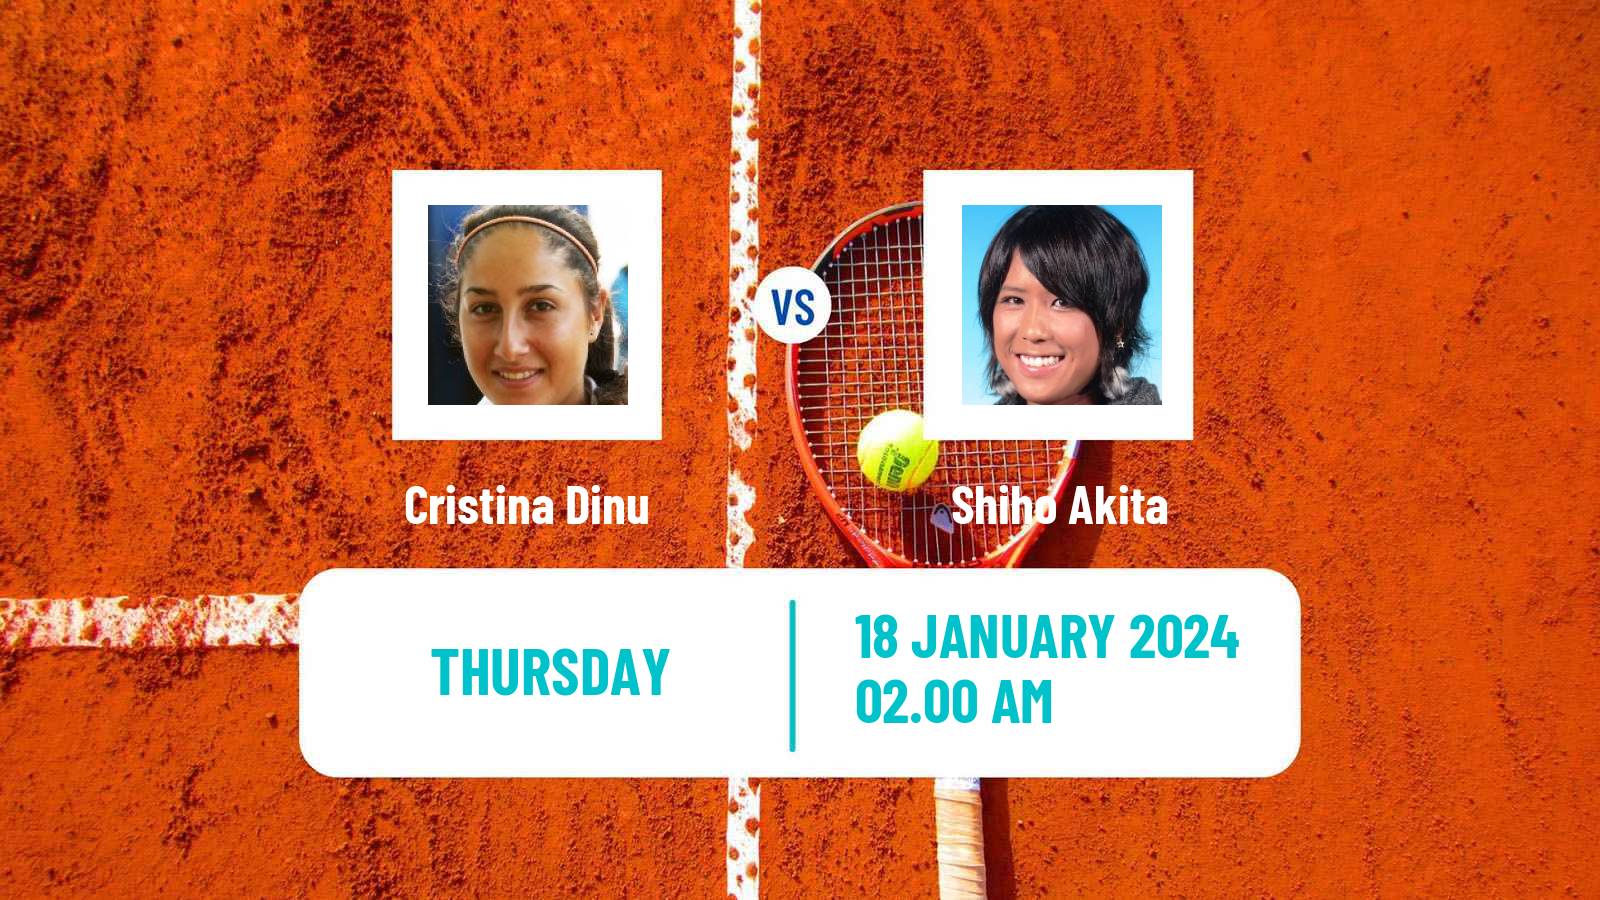 Tennis ITF W50 Antalya Women Cristina Dinu - Shiho Akita